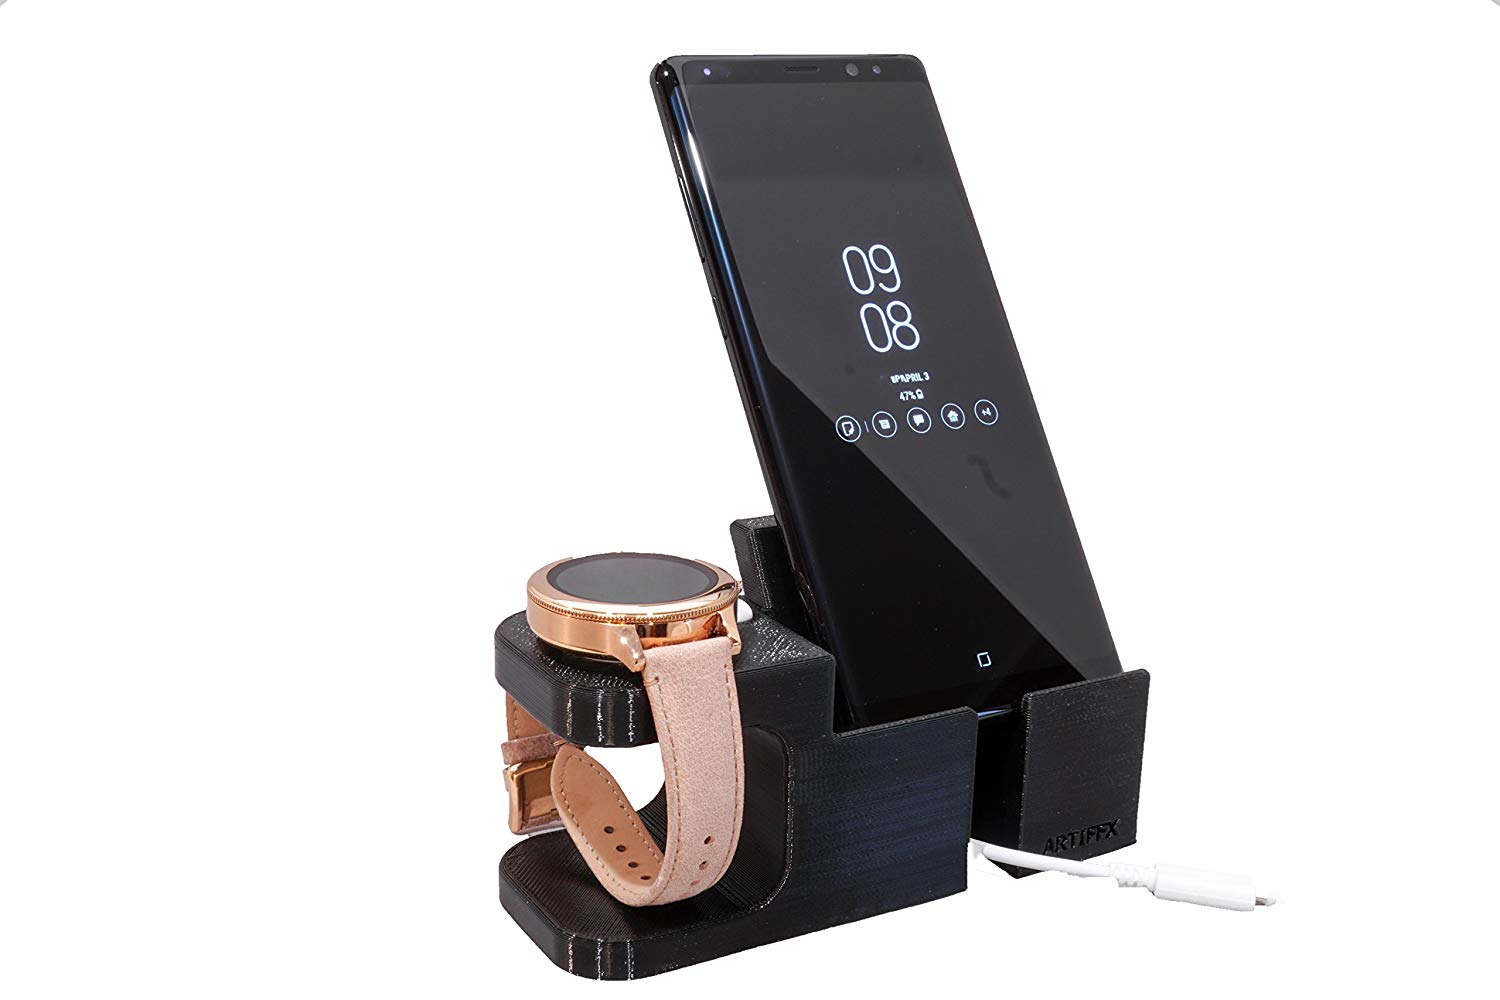 Fossil Q Marshal/ Gen3 / MK Bradshaw/ Skagen/ Emporio Armani/ Diesel/ Smartwatch Phone Combo by Artifex Design (Wireless charger) - Artifex Design 3D